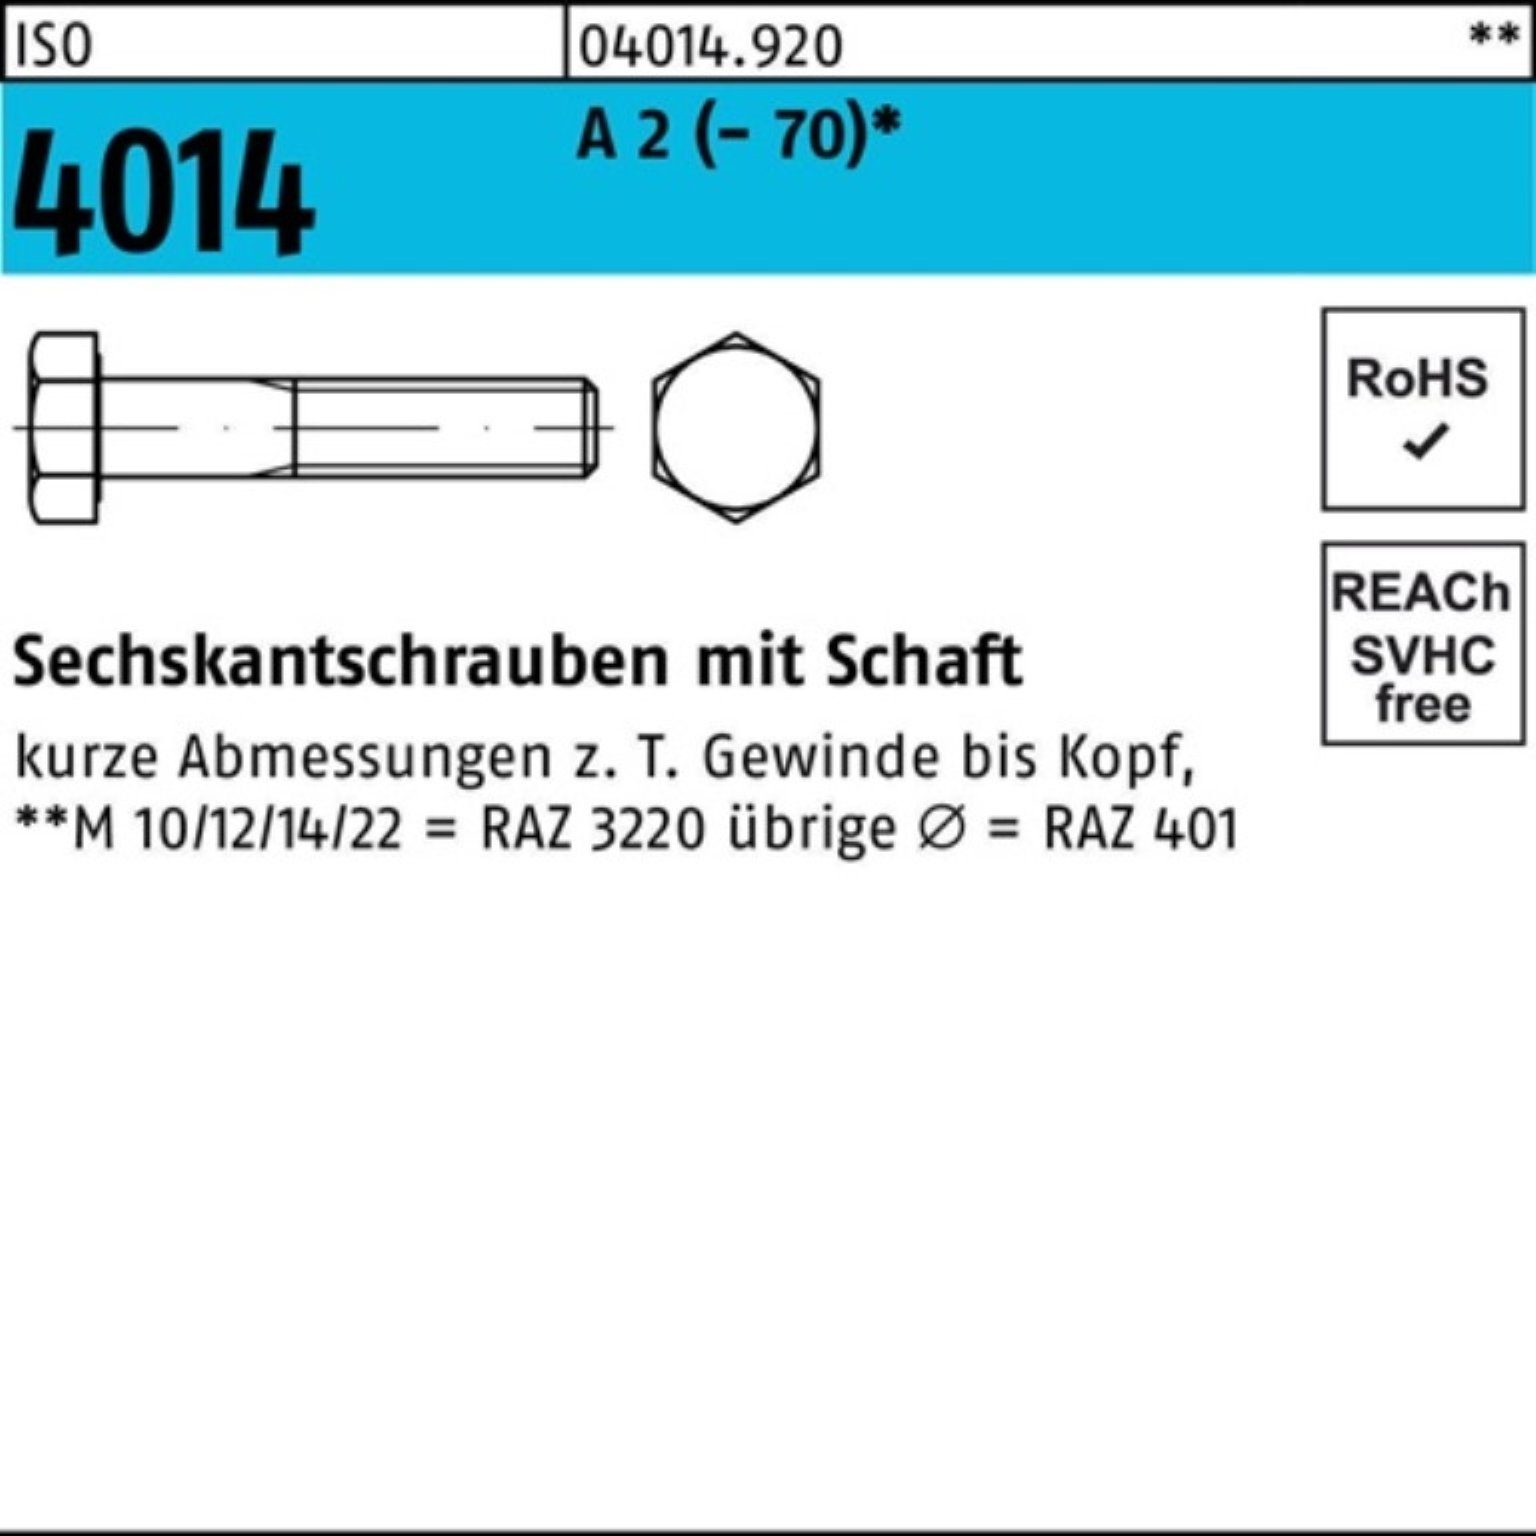 (70) Sechskantschraube 2 4014 Bufab A M16x 1 100er Pack St ISO Schaft 220 Sechskantschraube